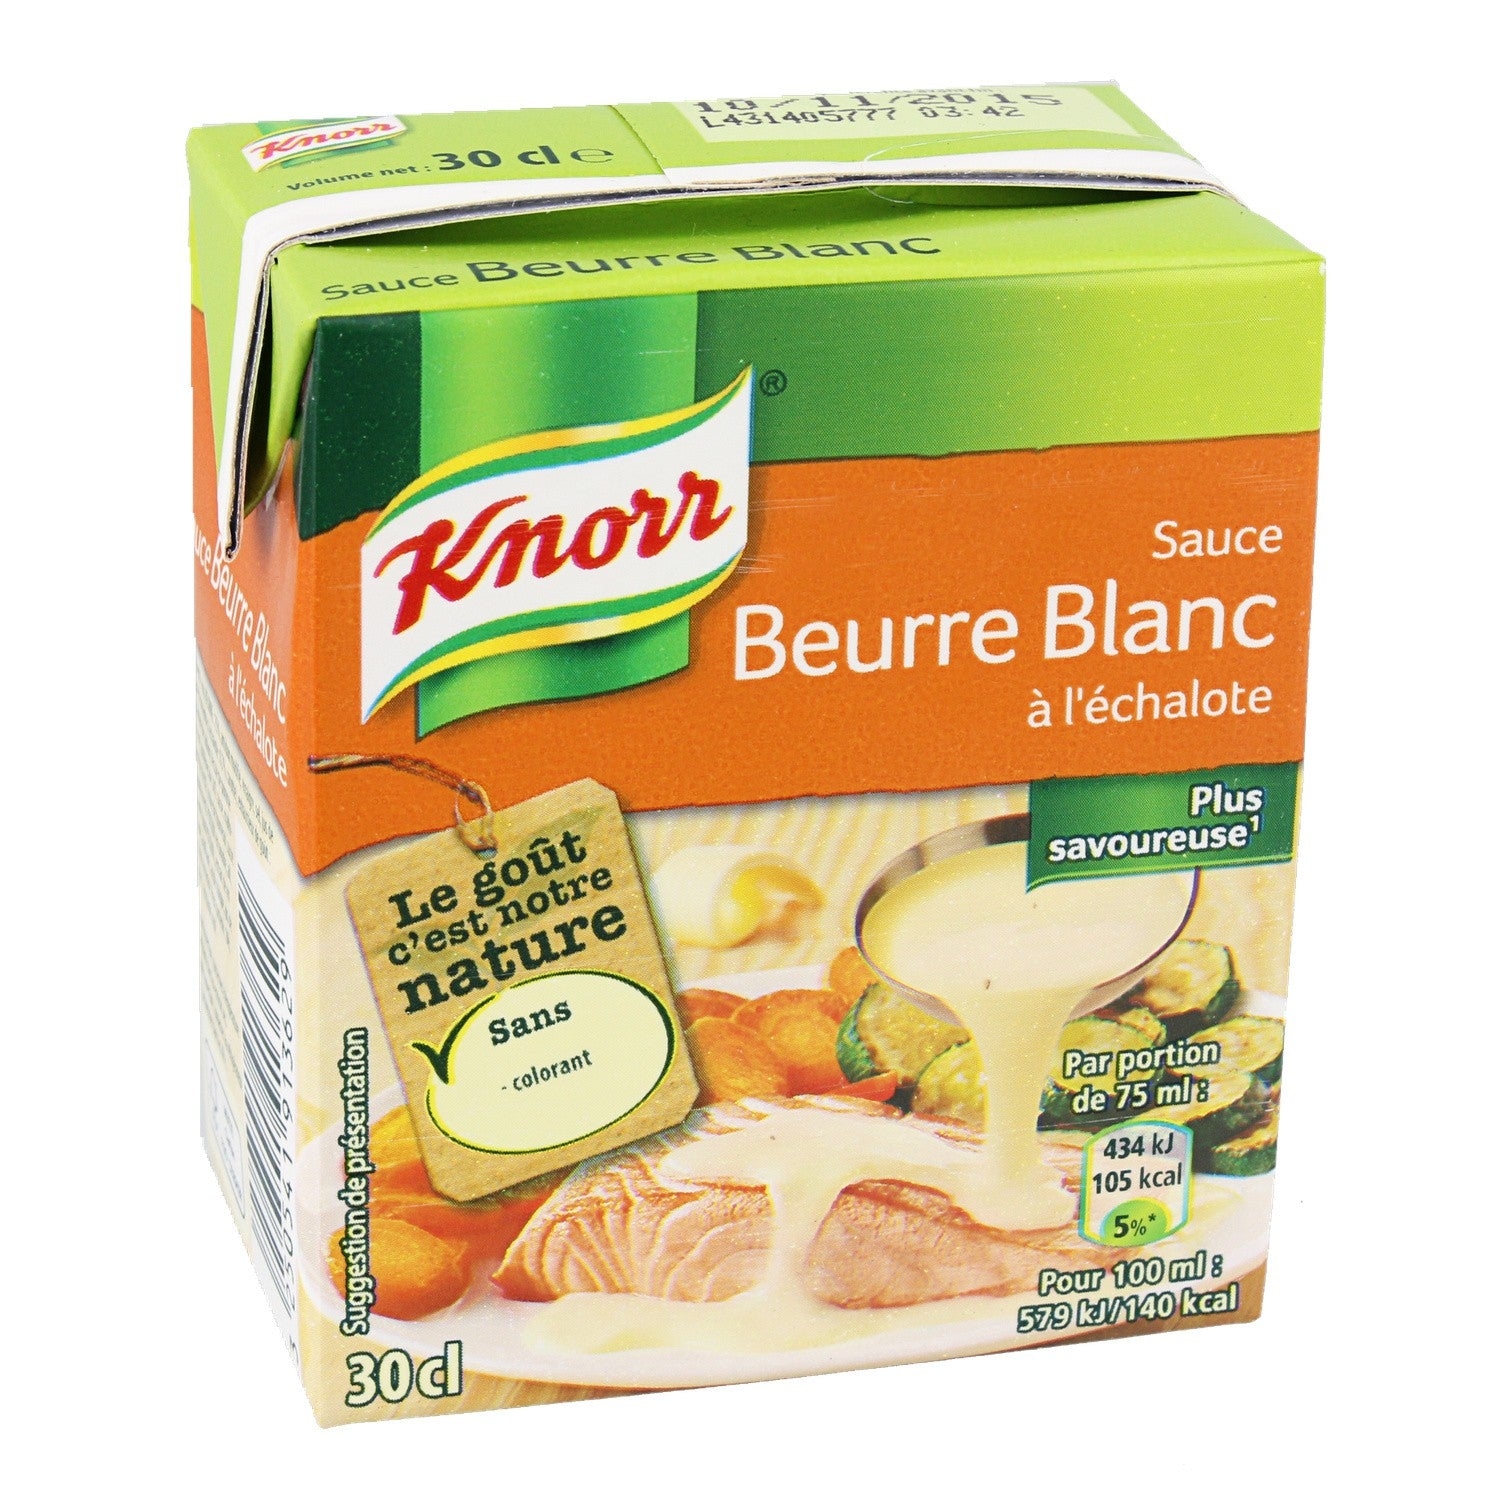 beurre blanc with shallotsSauce au beurre blanc à l’échalote brick – Beurre blanc sauce with shallots carton – Knorr, 30cl – Chanteroy – Le Vacherin